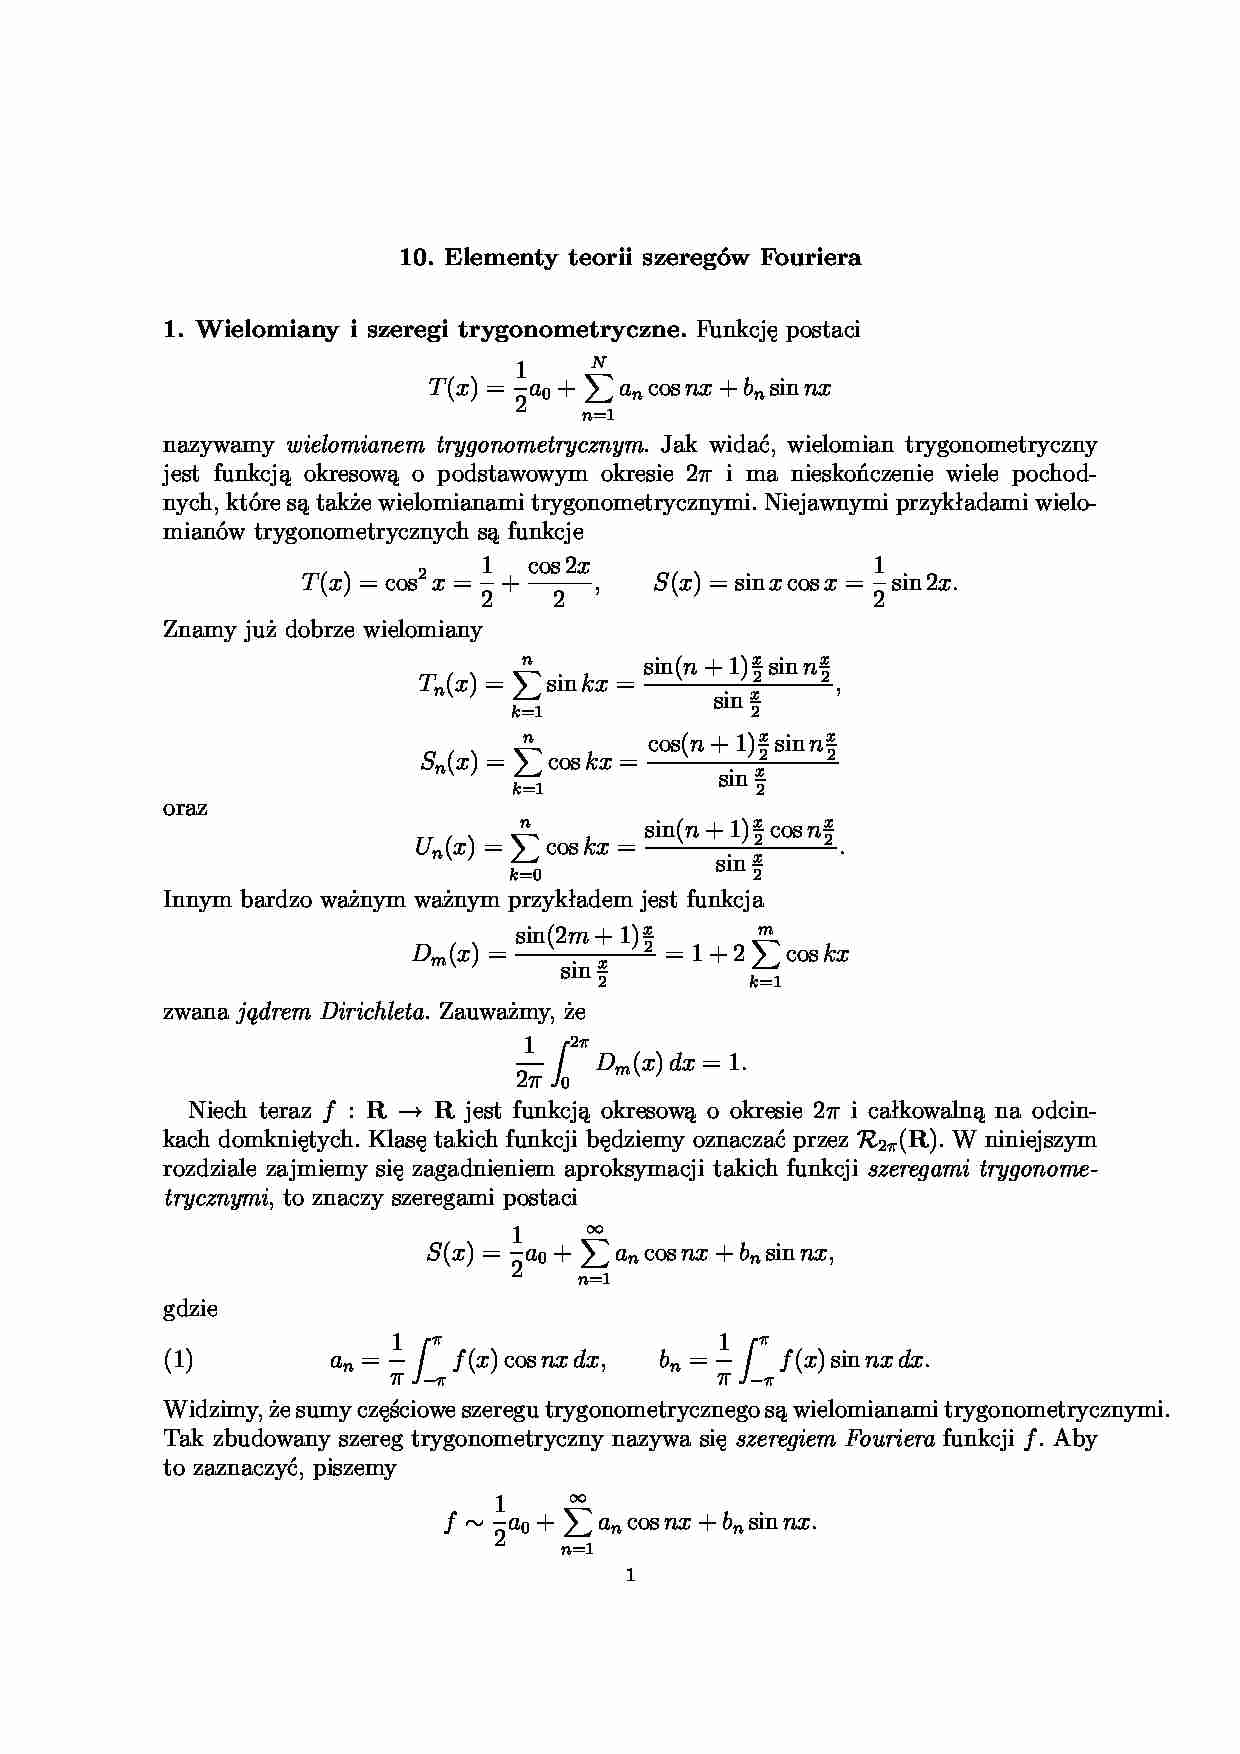 Elementy teorii szeregów Fouriera - wykład - strona 1